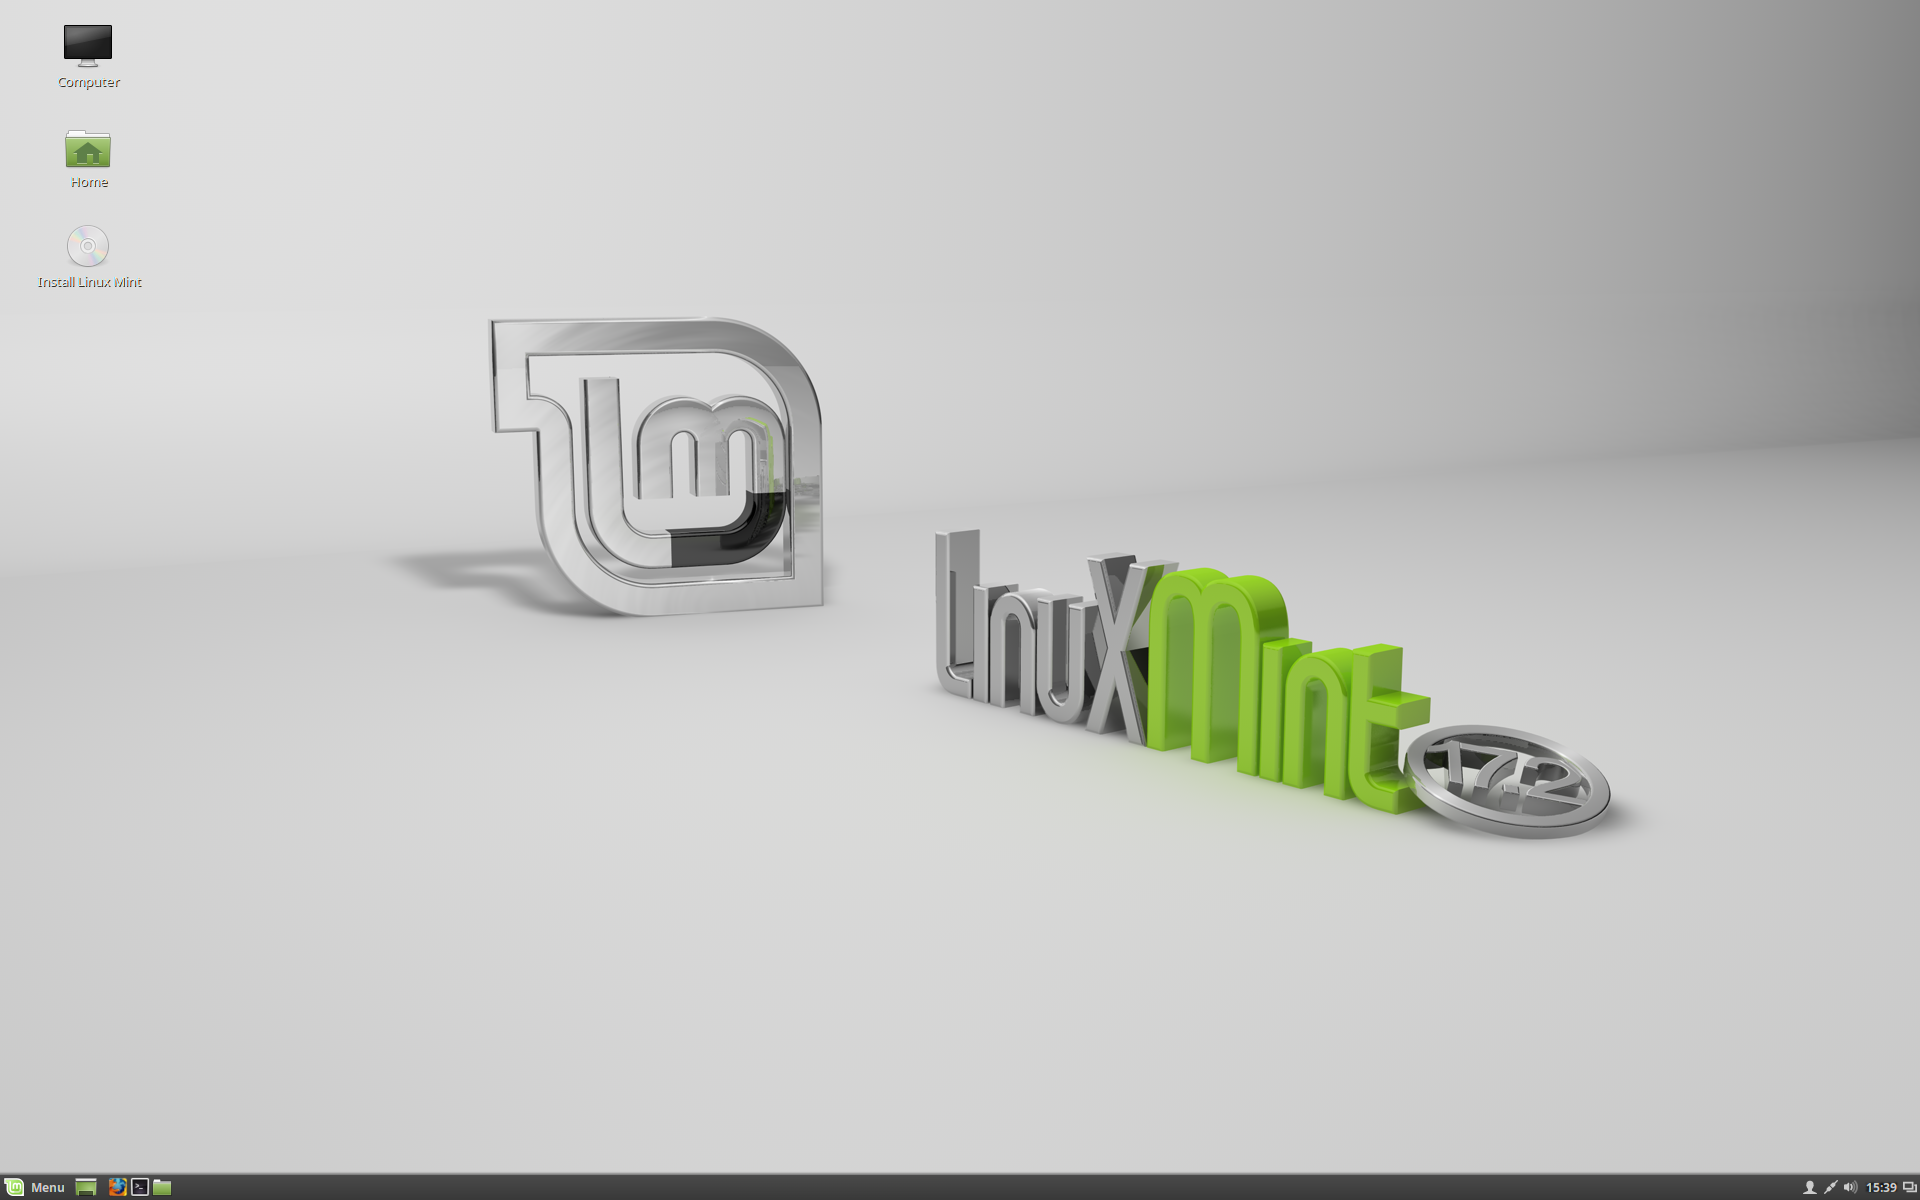 Linux Mint 17.2 